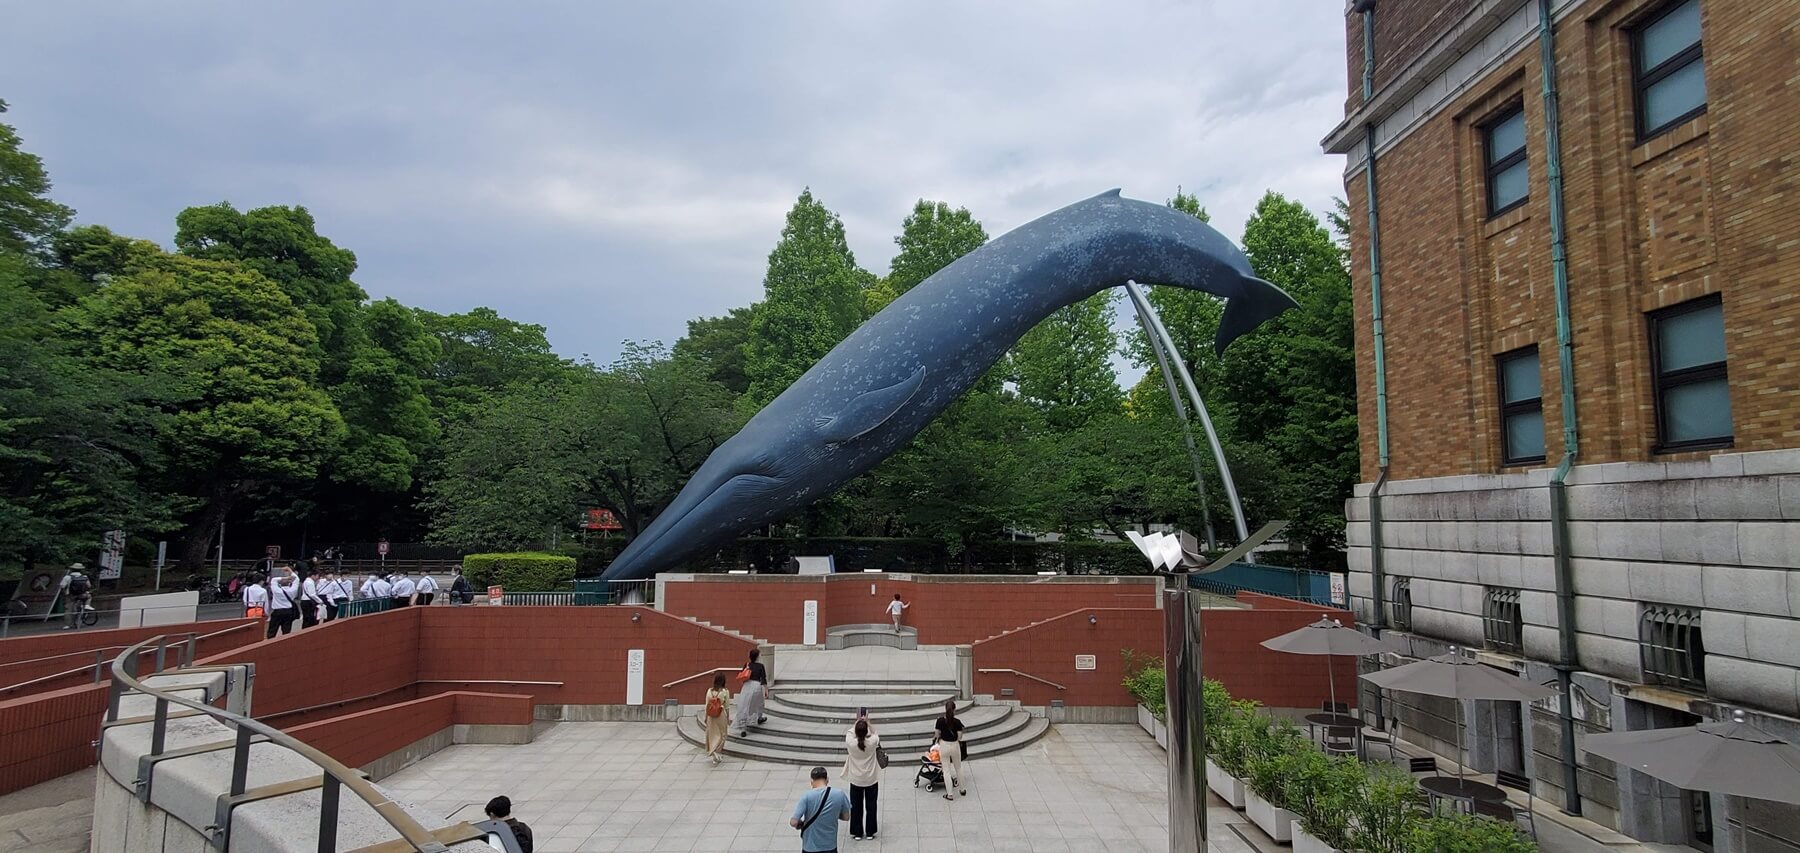 国立科学博物館 National Museum of Nature and Science,Tokyo